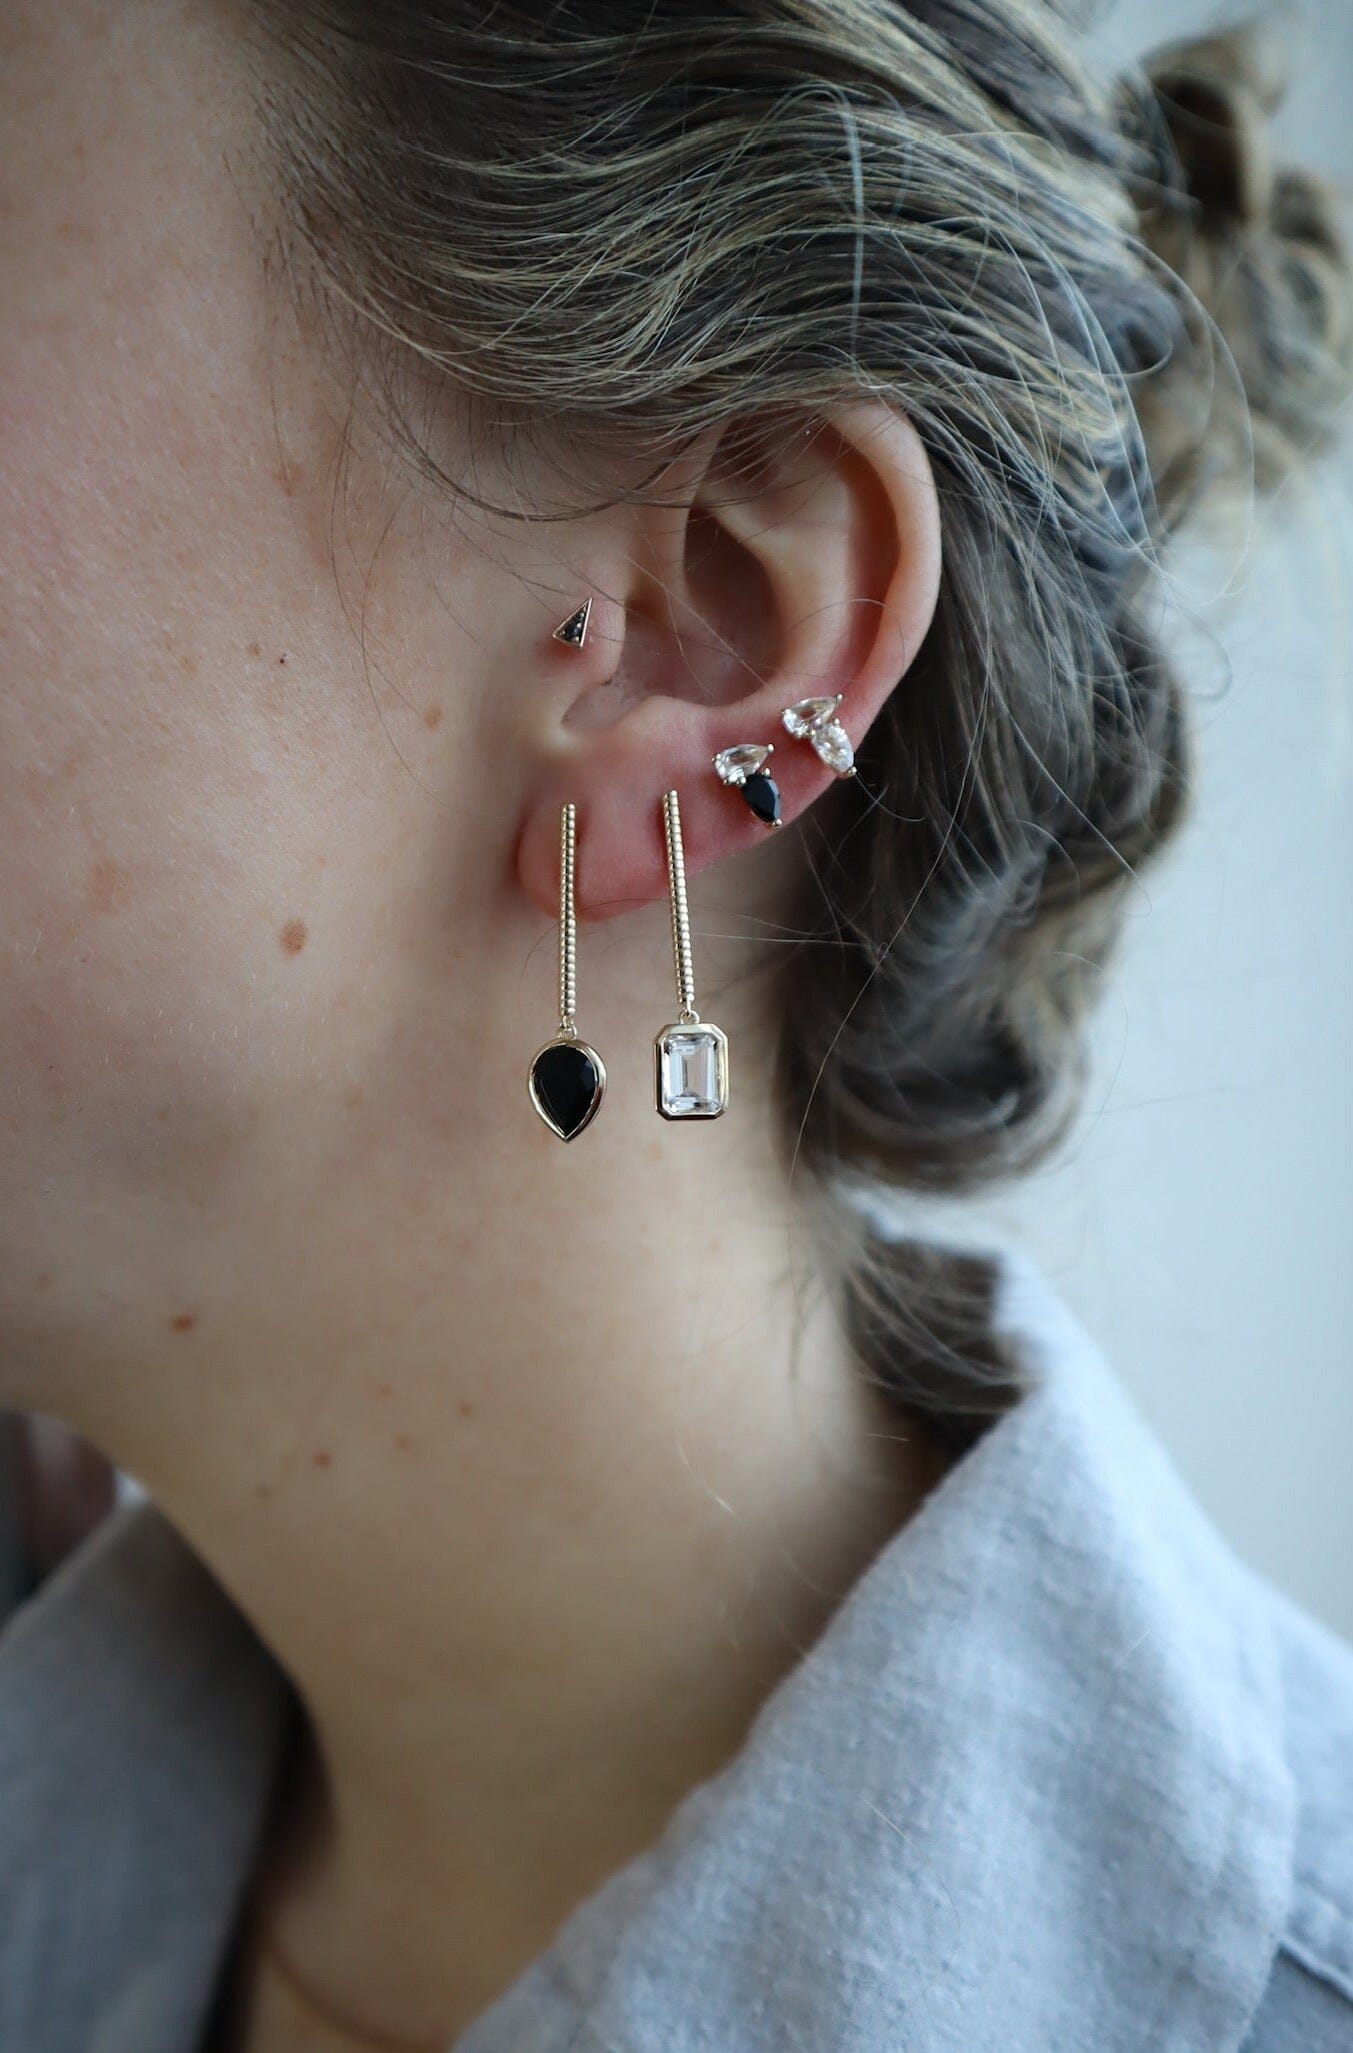 Mini White and Black Cookie Studs Earrings - BONDEYE JEWELRY ®